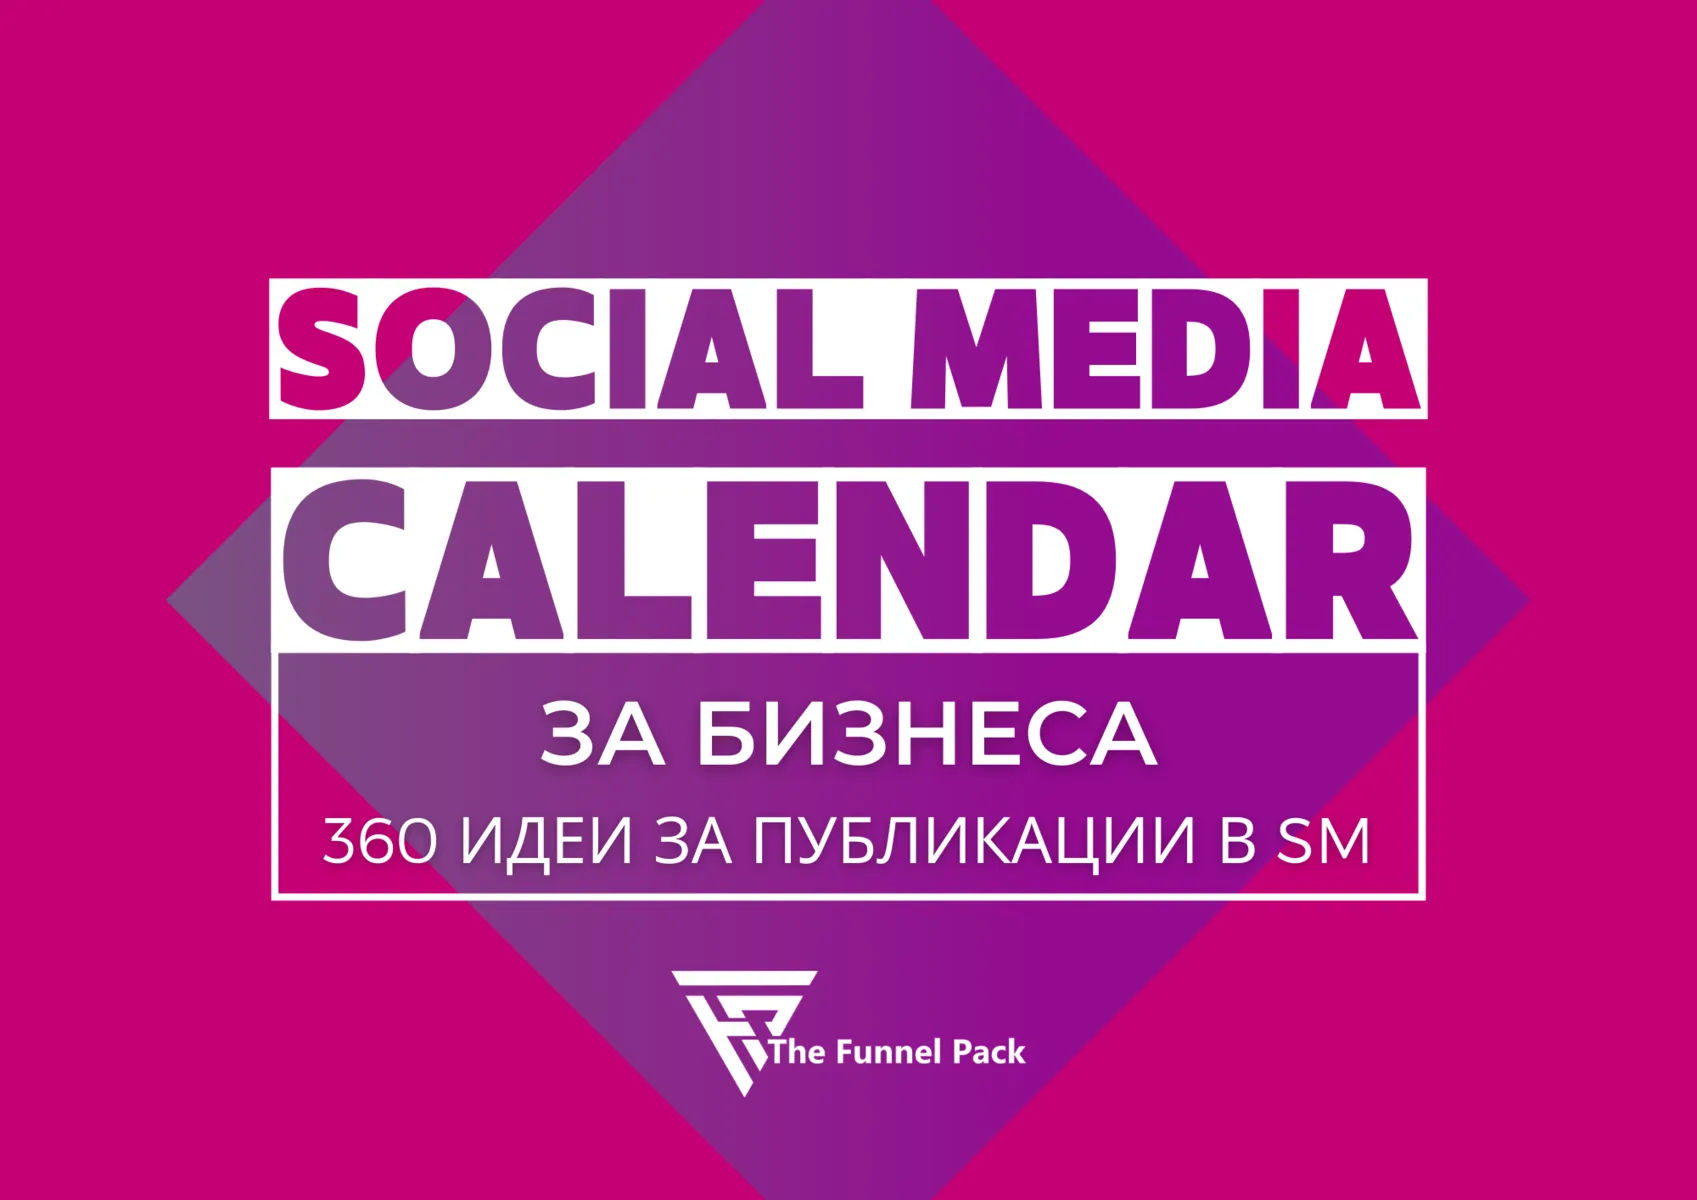 Social Media Calendar за бизнеса - 360 идеи